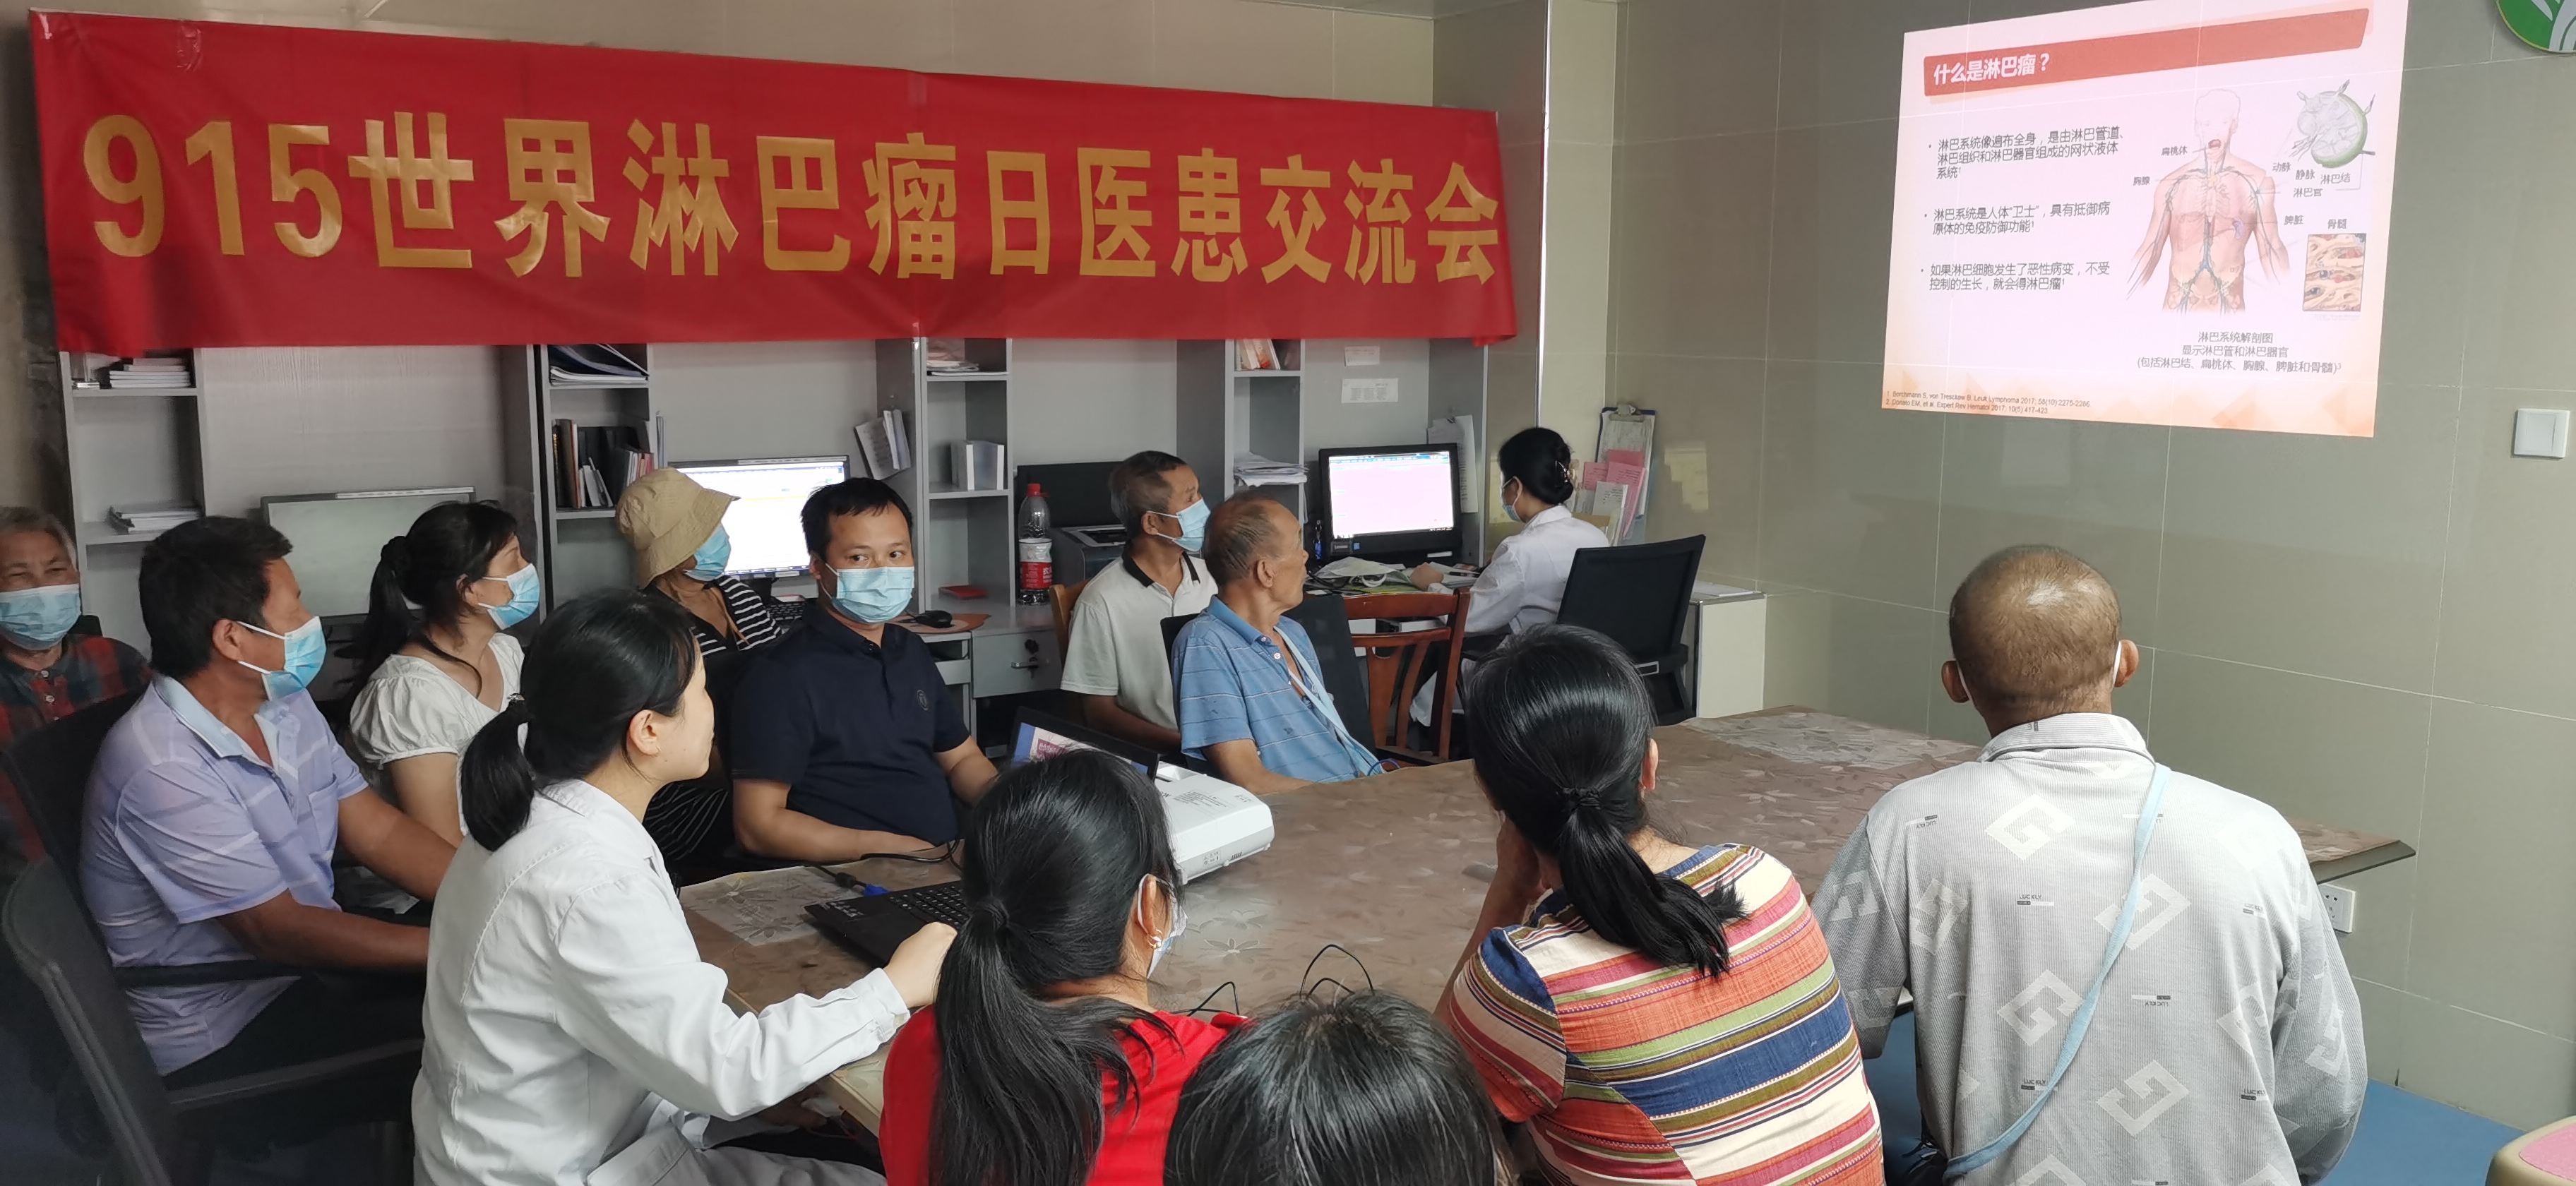 广西壮族自治区南溪山医院举办「9·15」世界淋巴瘤日医患交流会